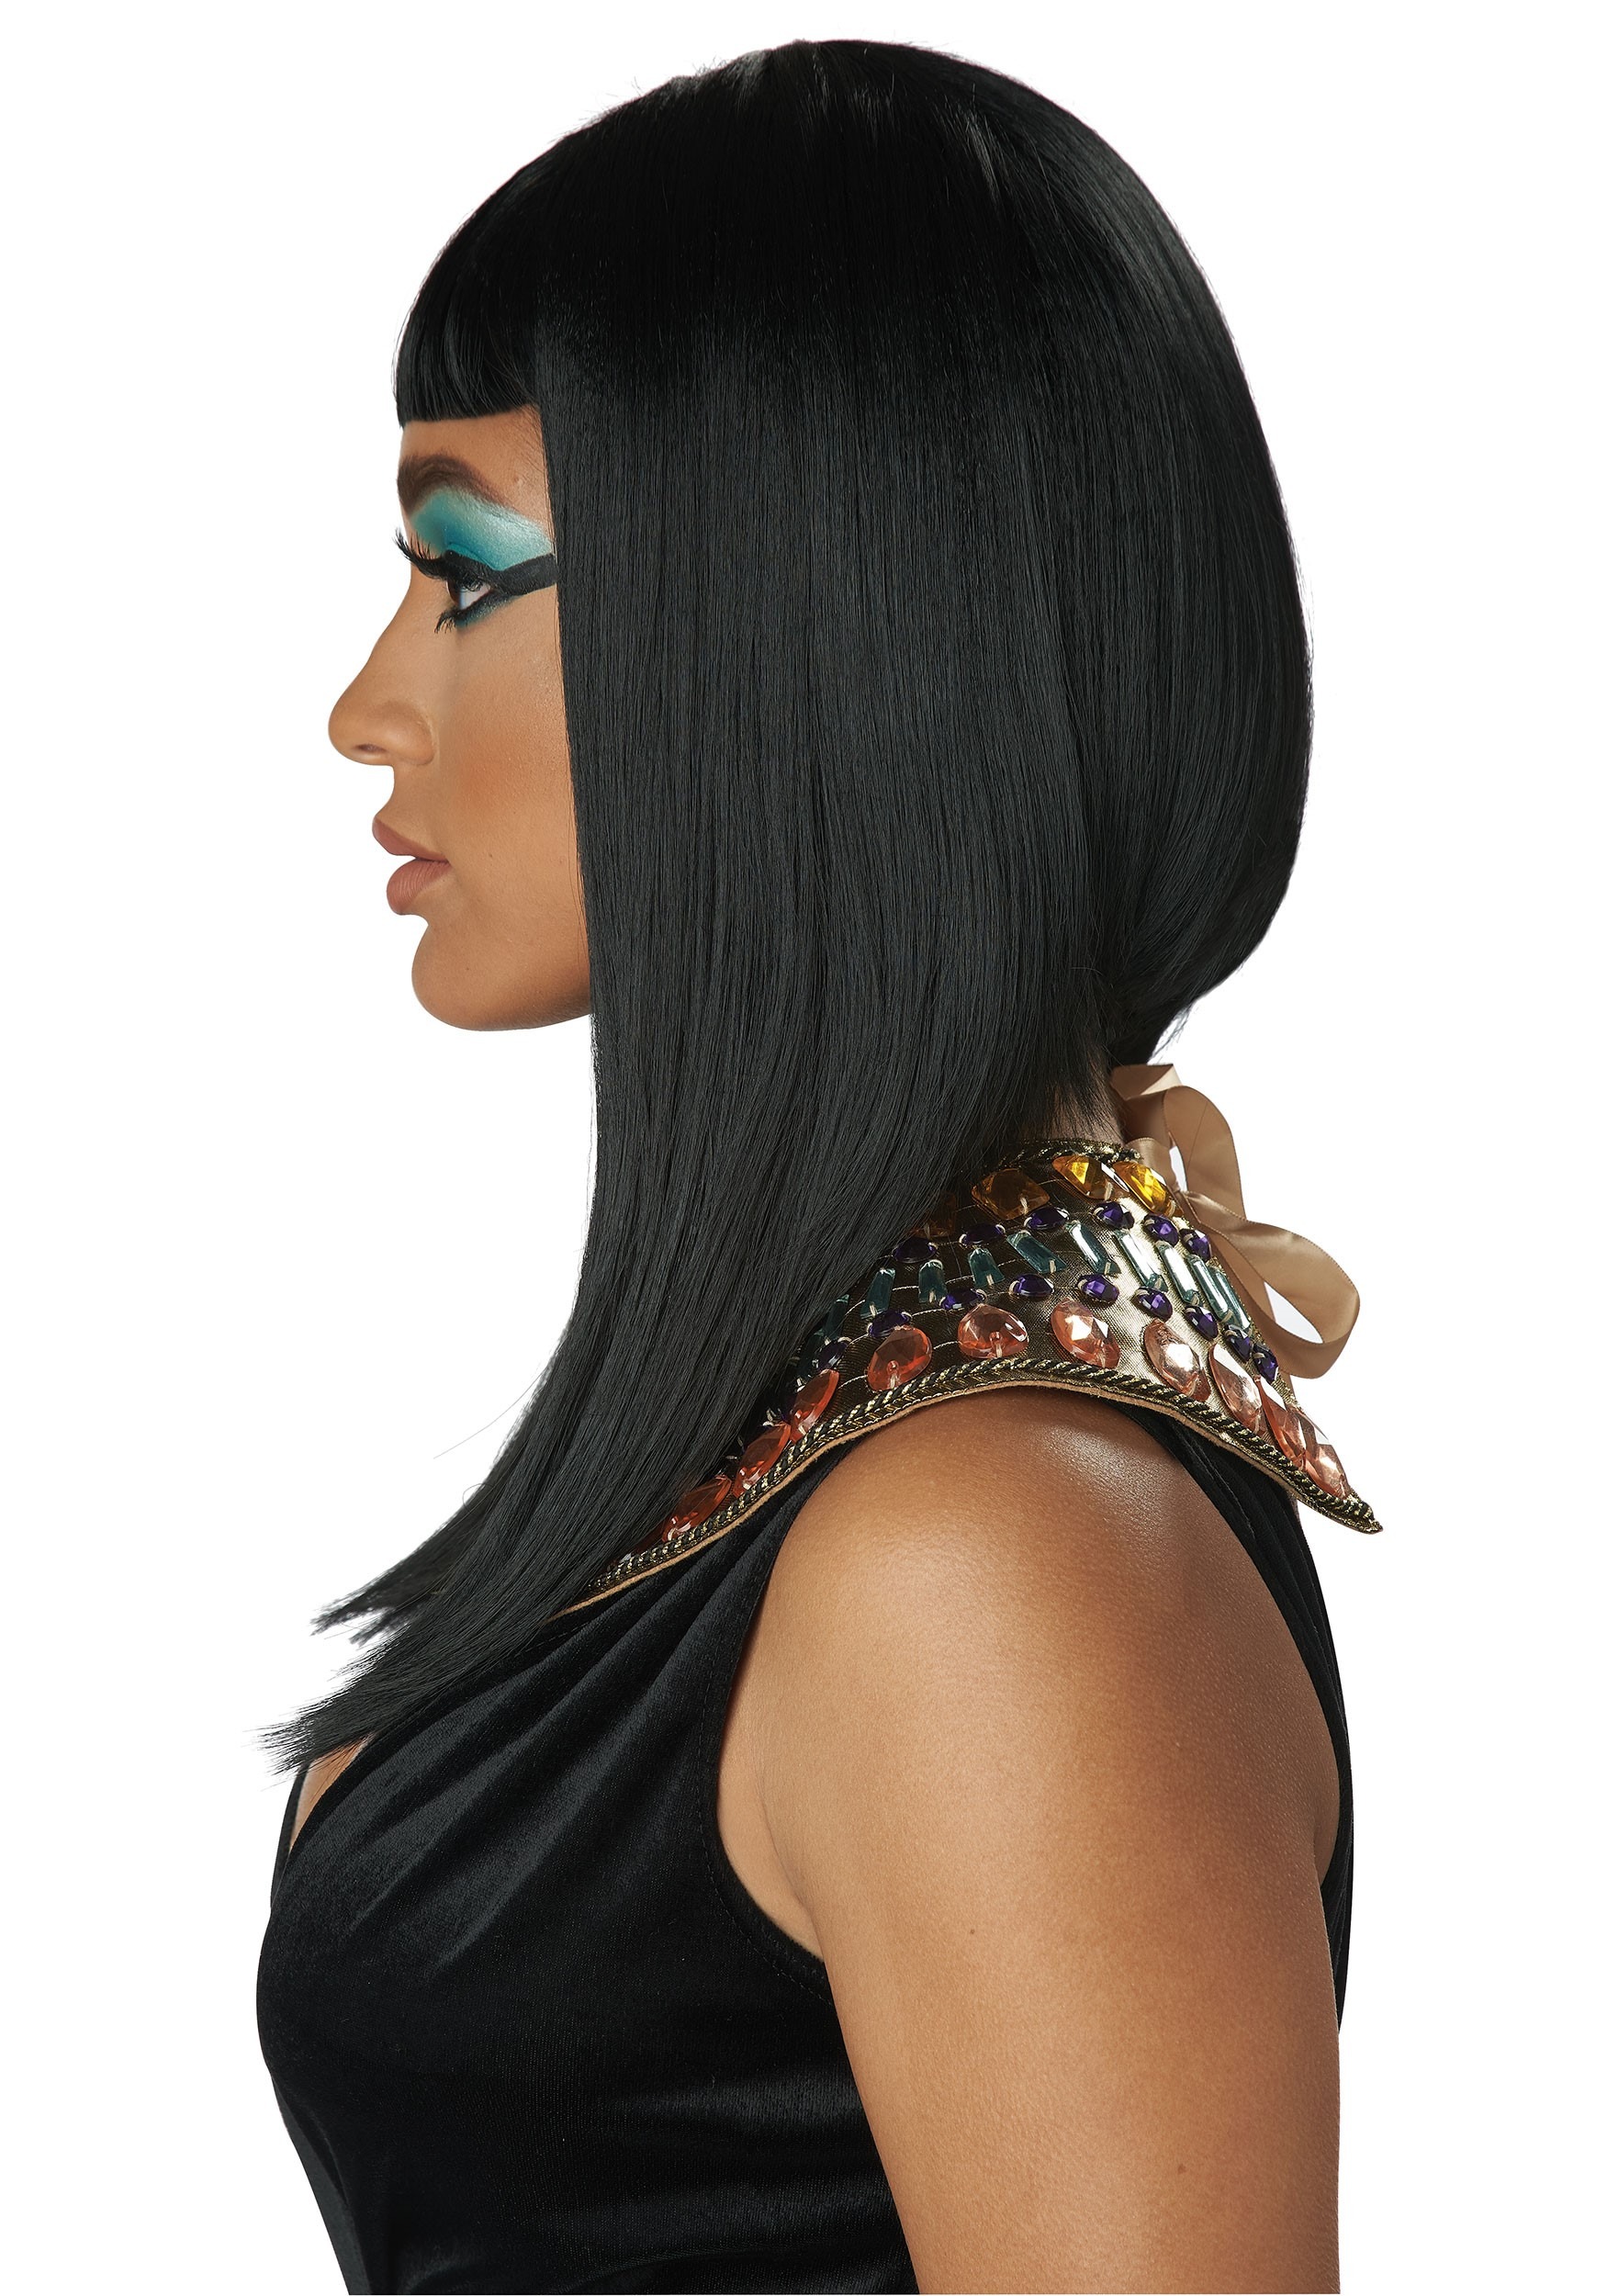 Egyptian Angular Cut Wig